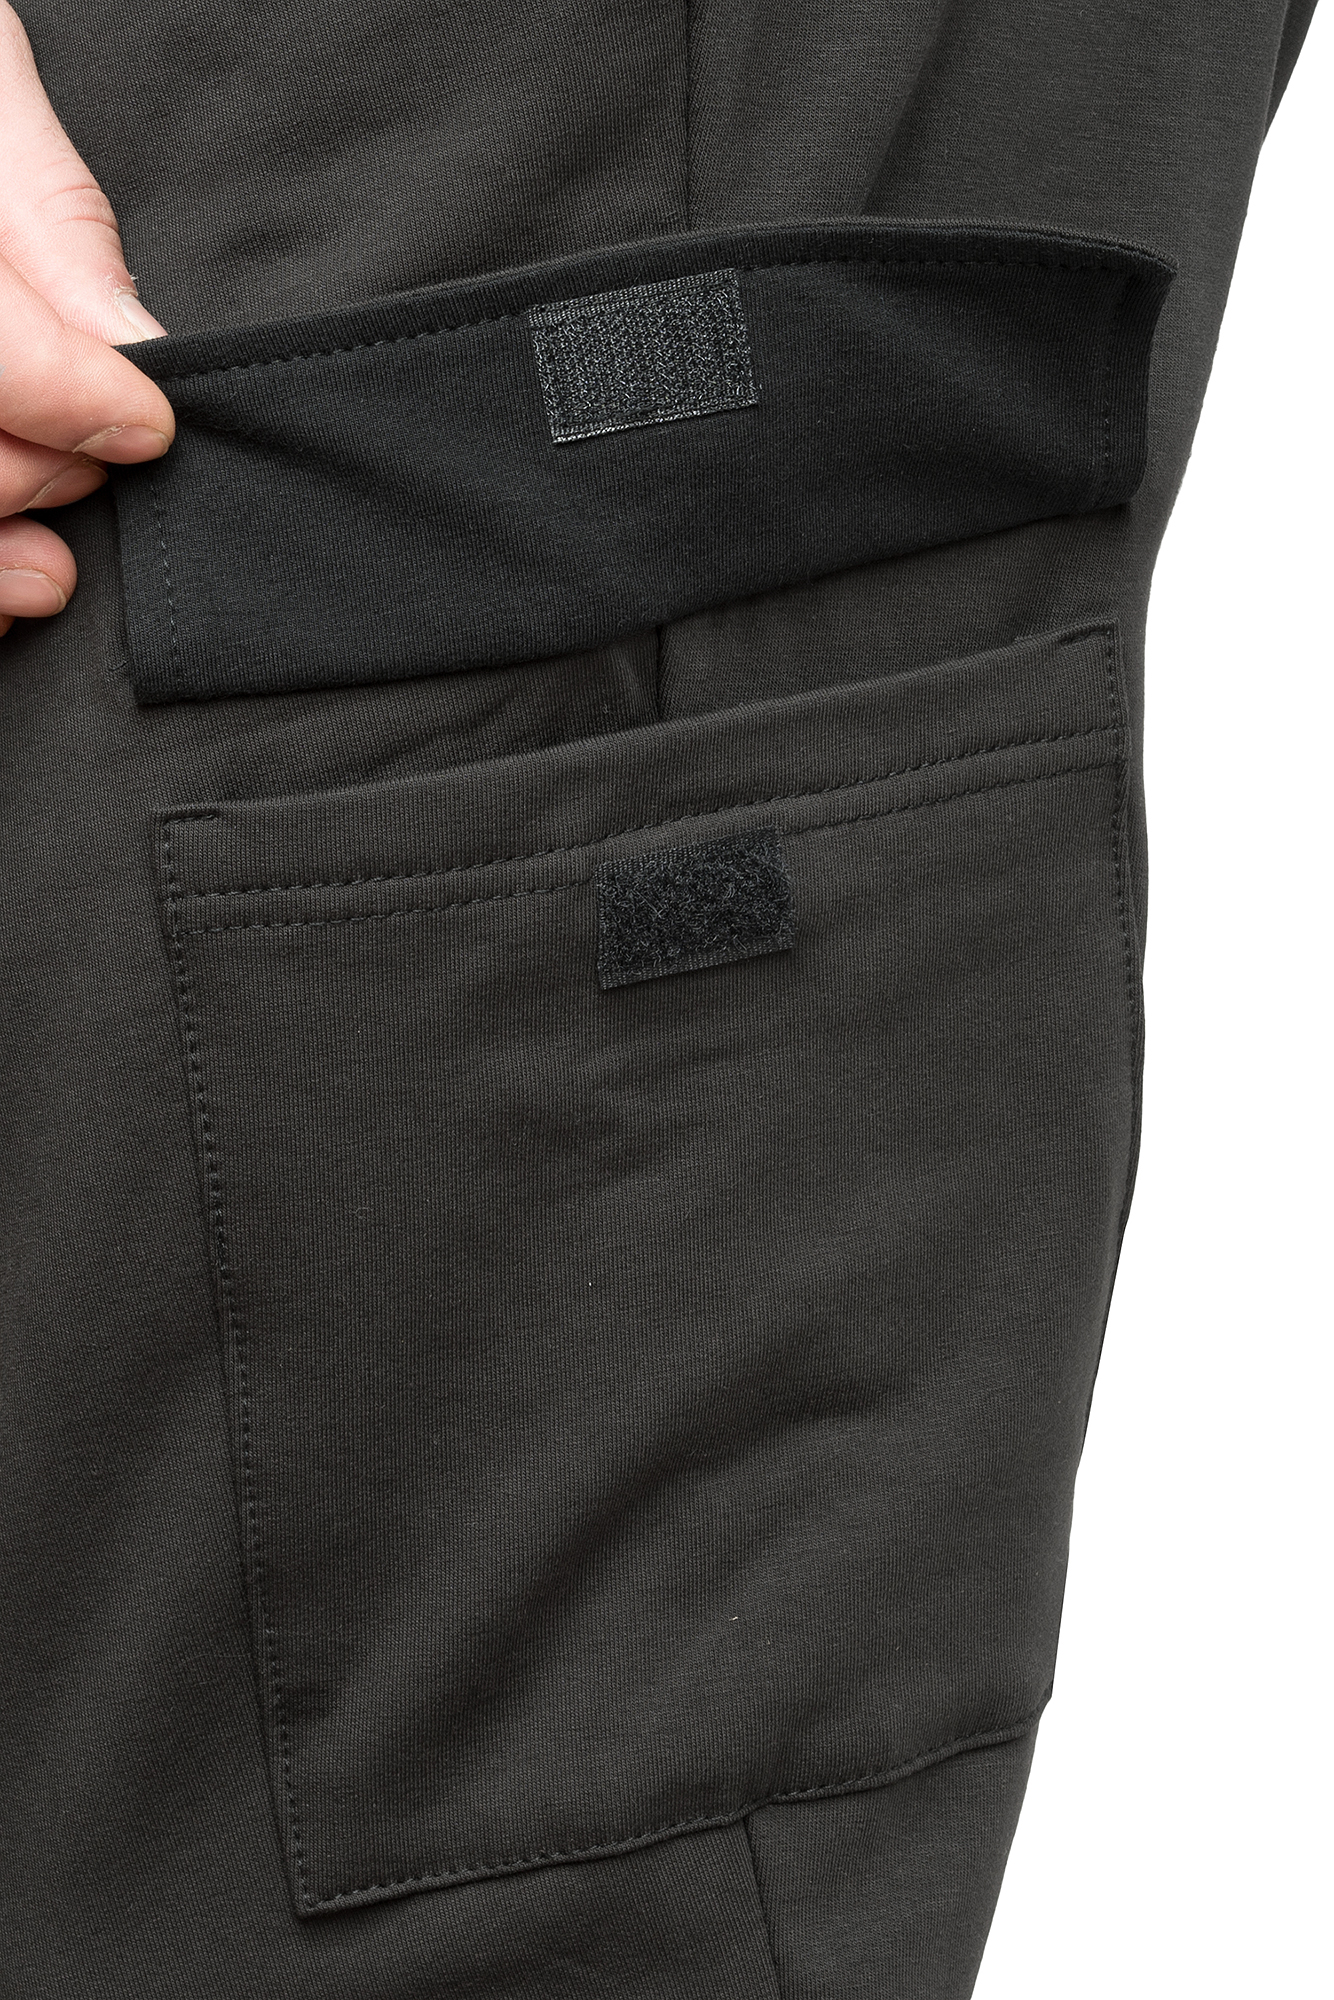 Трикотажные брюки "Карелия" (Чёрные) оптом и в розницу